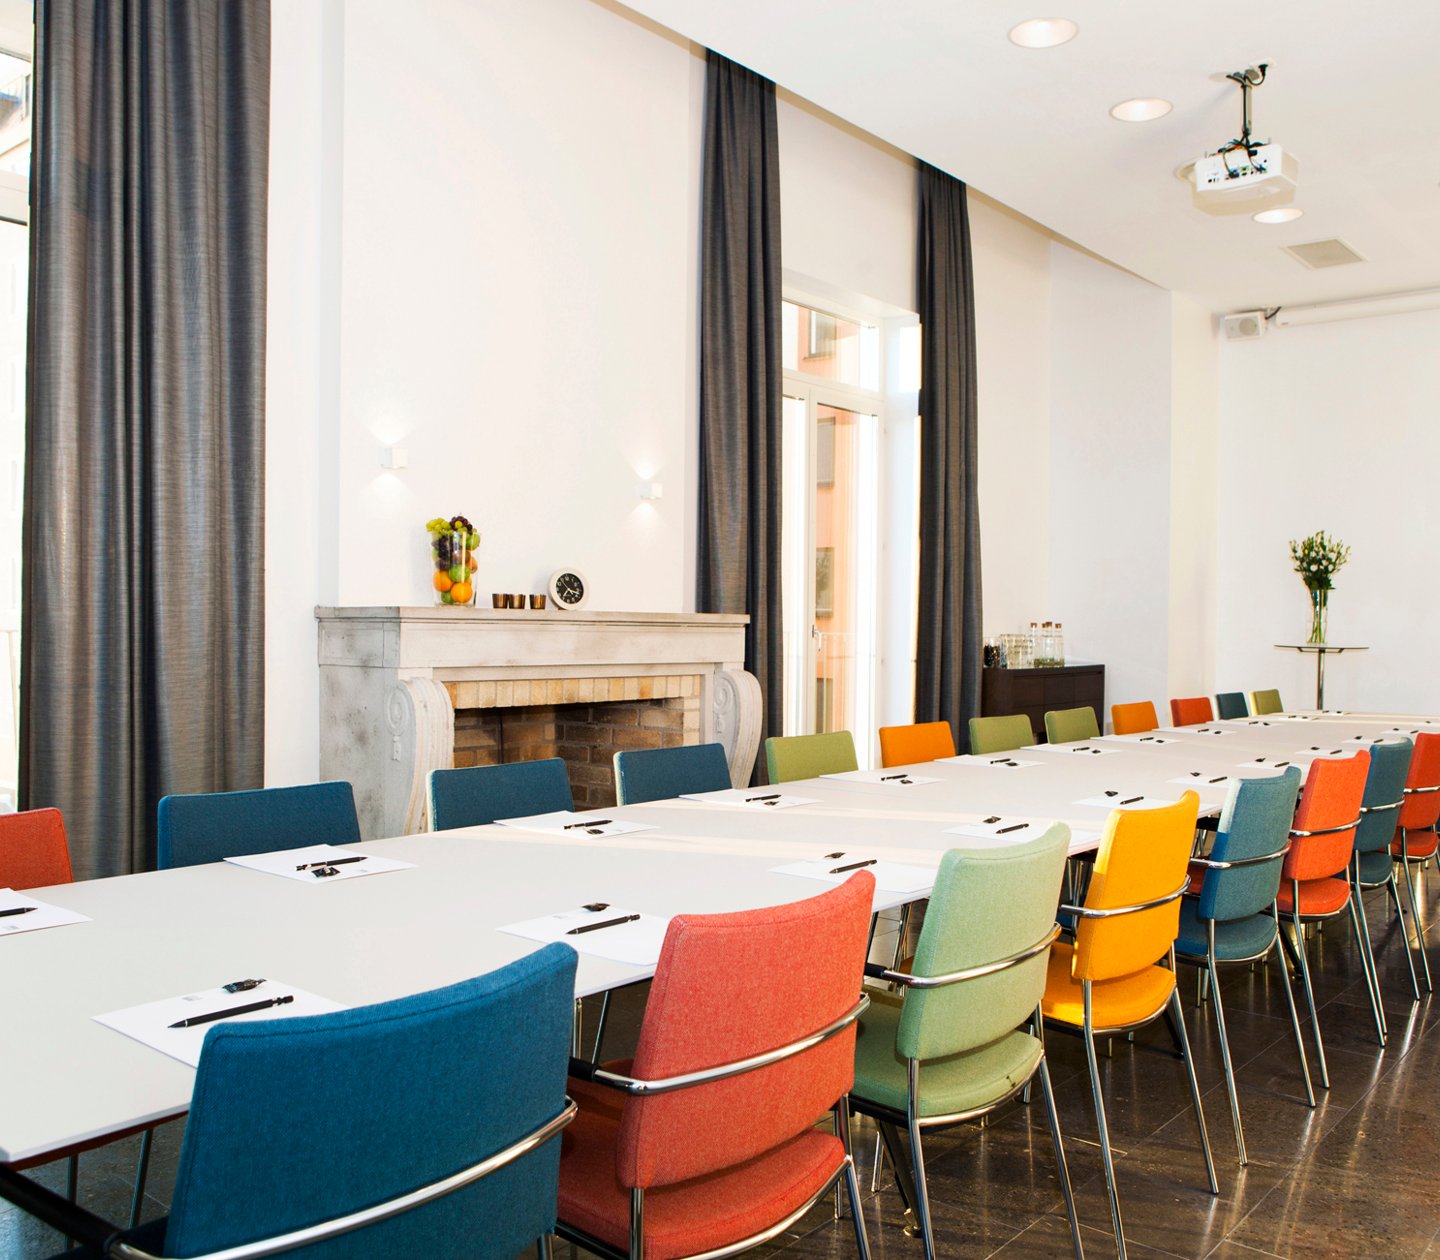 Konferensrum med färglada stolar